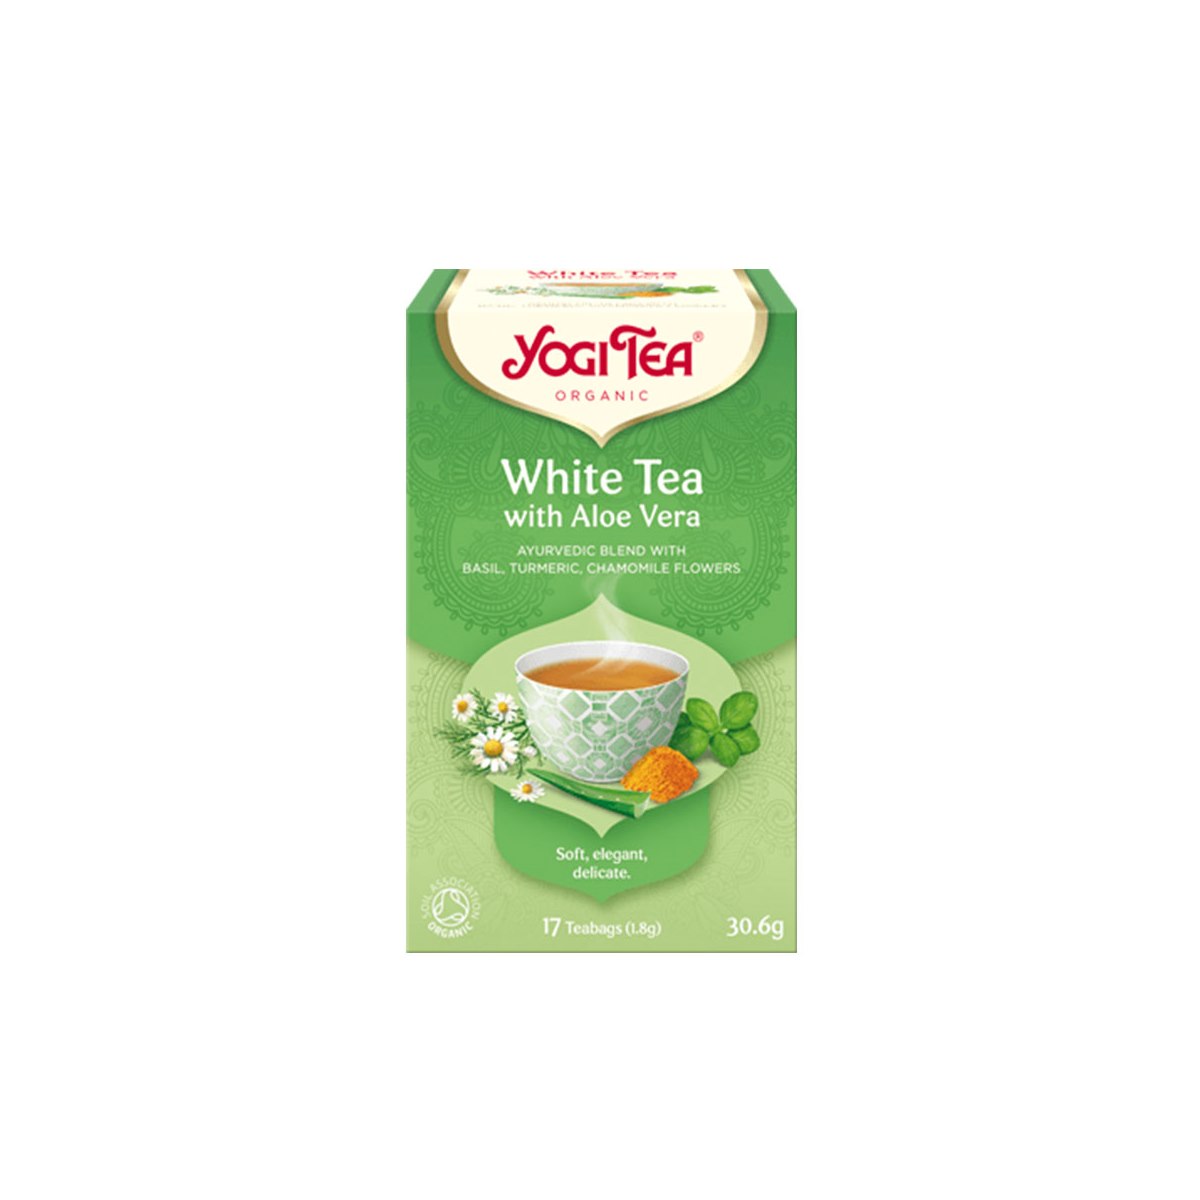 Yogi Tea White Tea With Aloe Vera 17 Bags